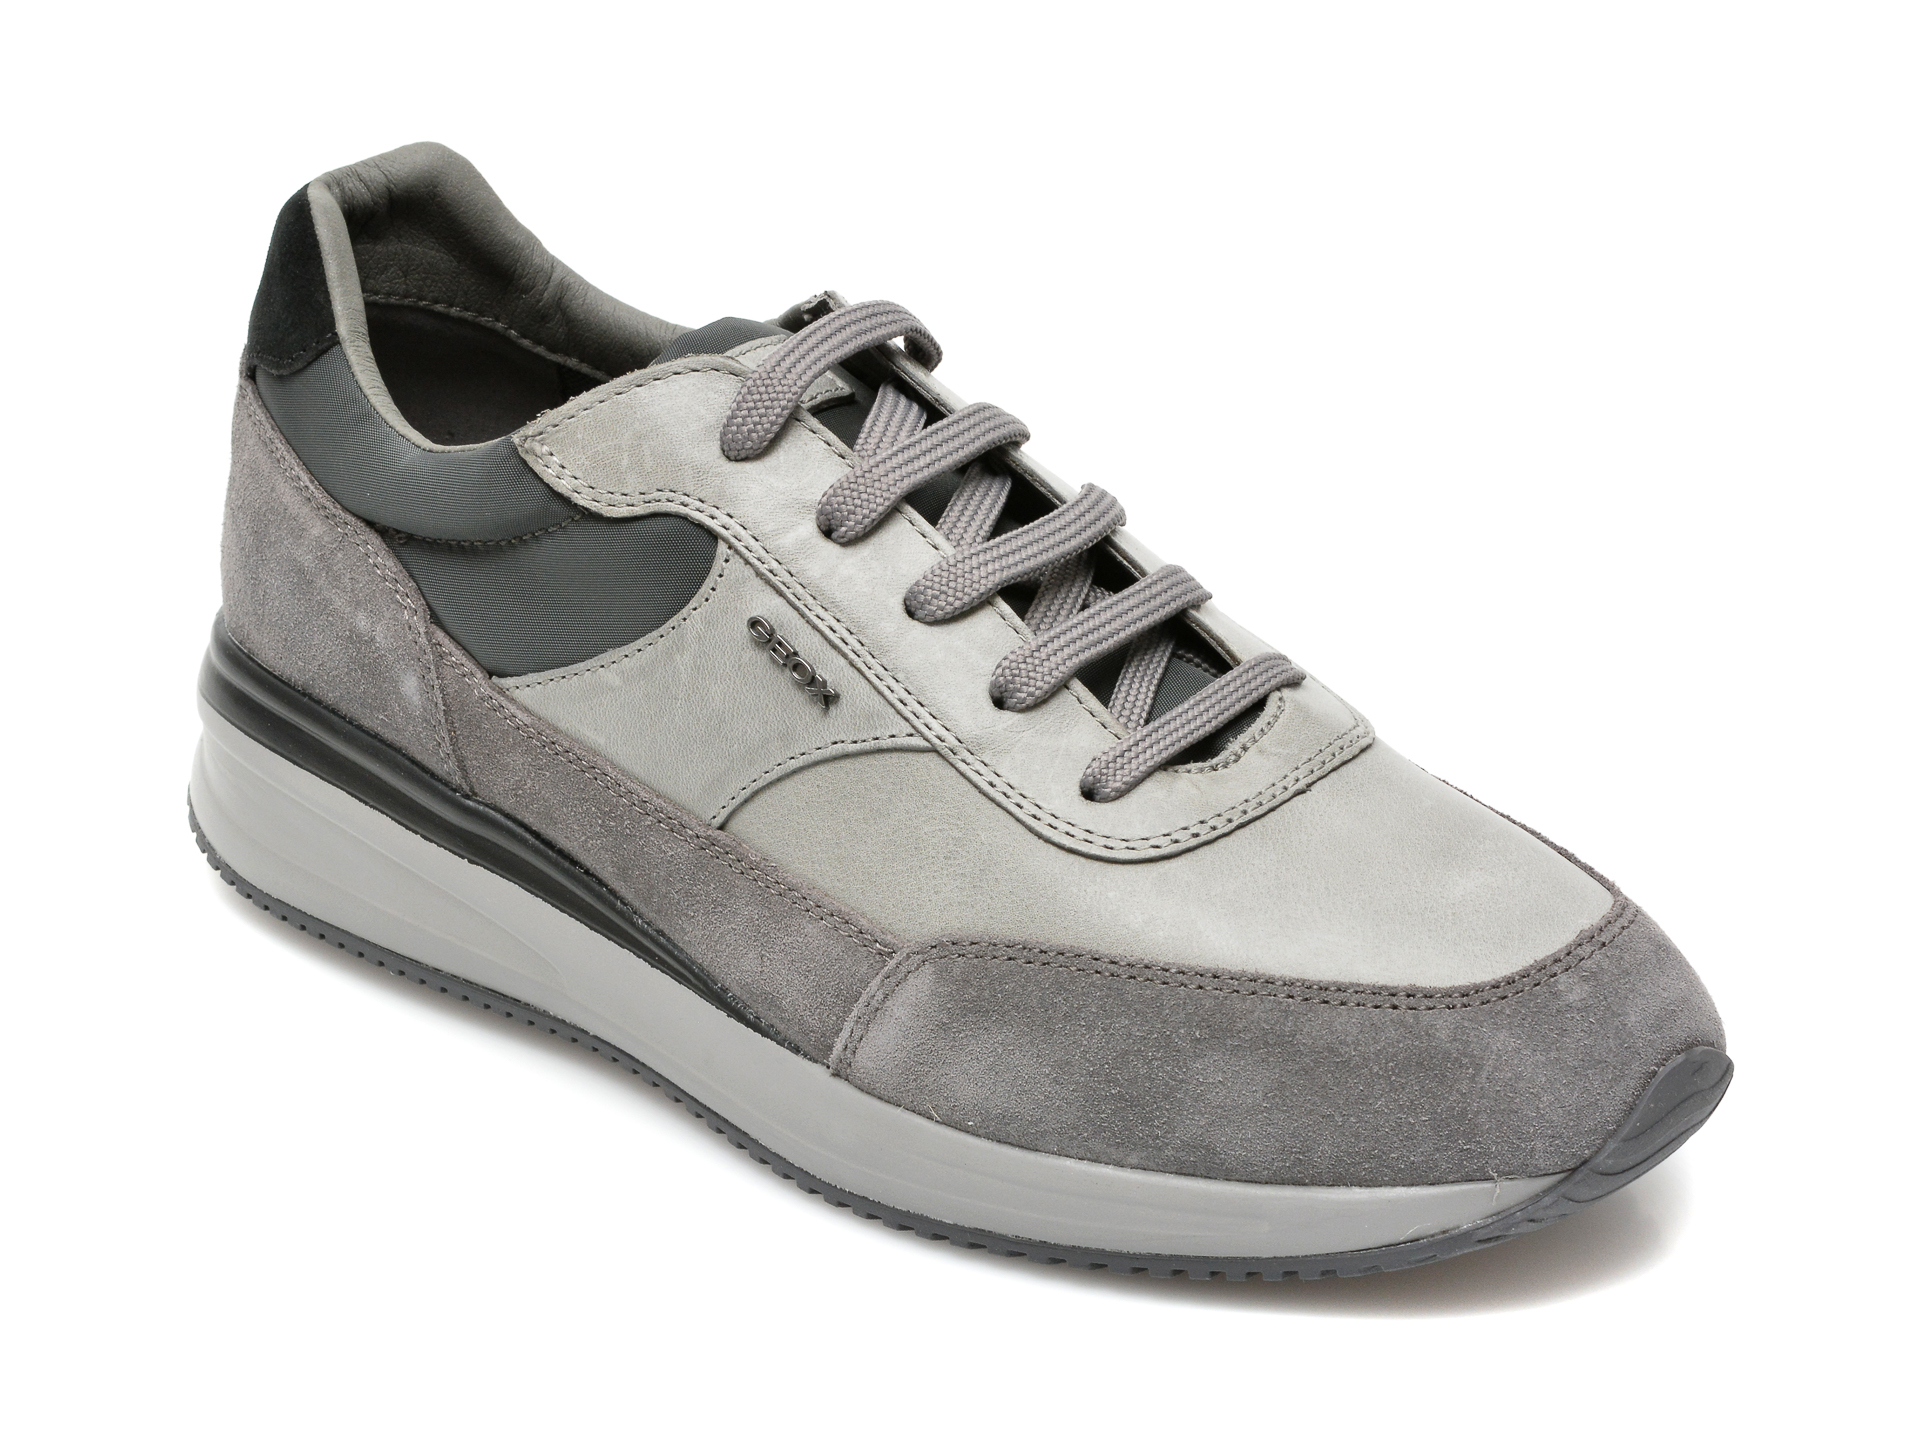 Pantofi GEOX gri, U150GA, din material textil si piele naturala Geox